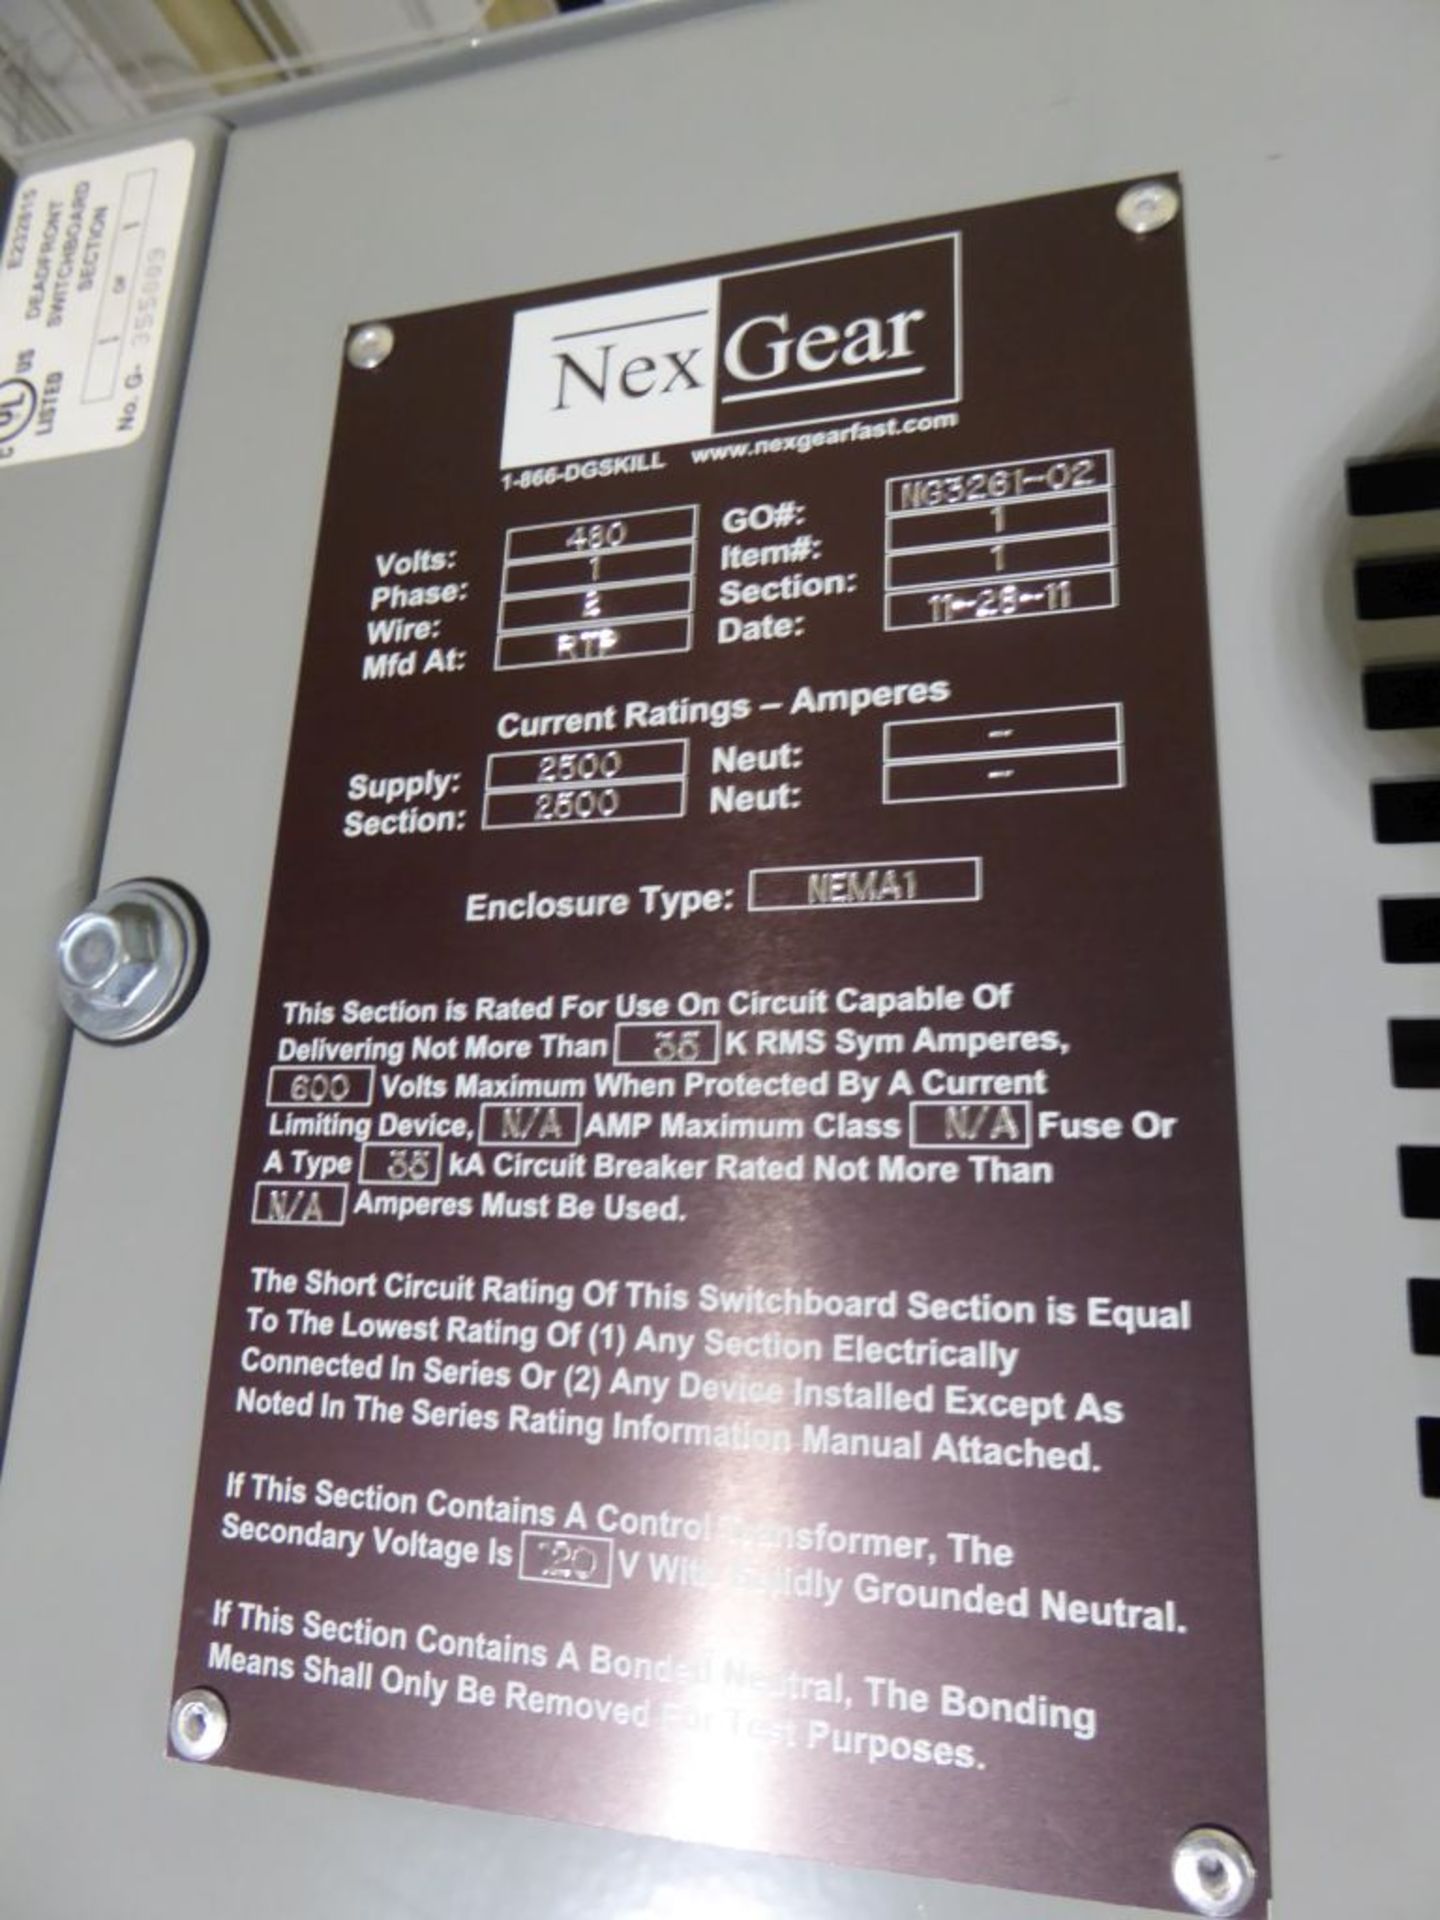 Charlotte, NC - NexGear 2500A Switchgear - Image 5 of 7